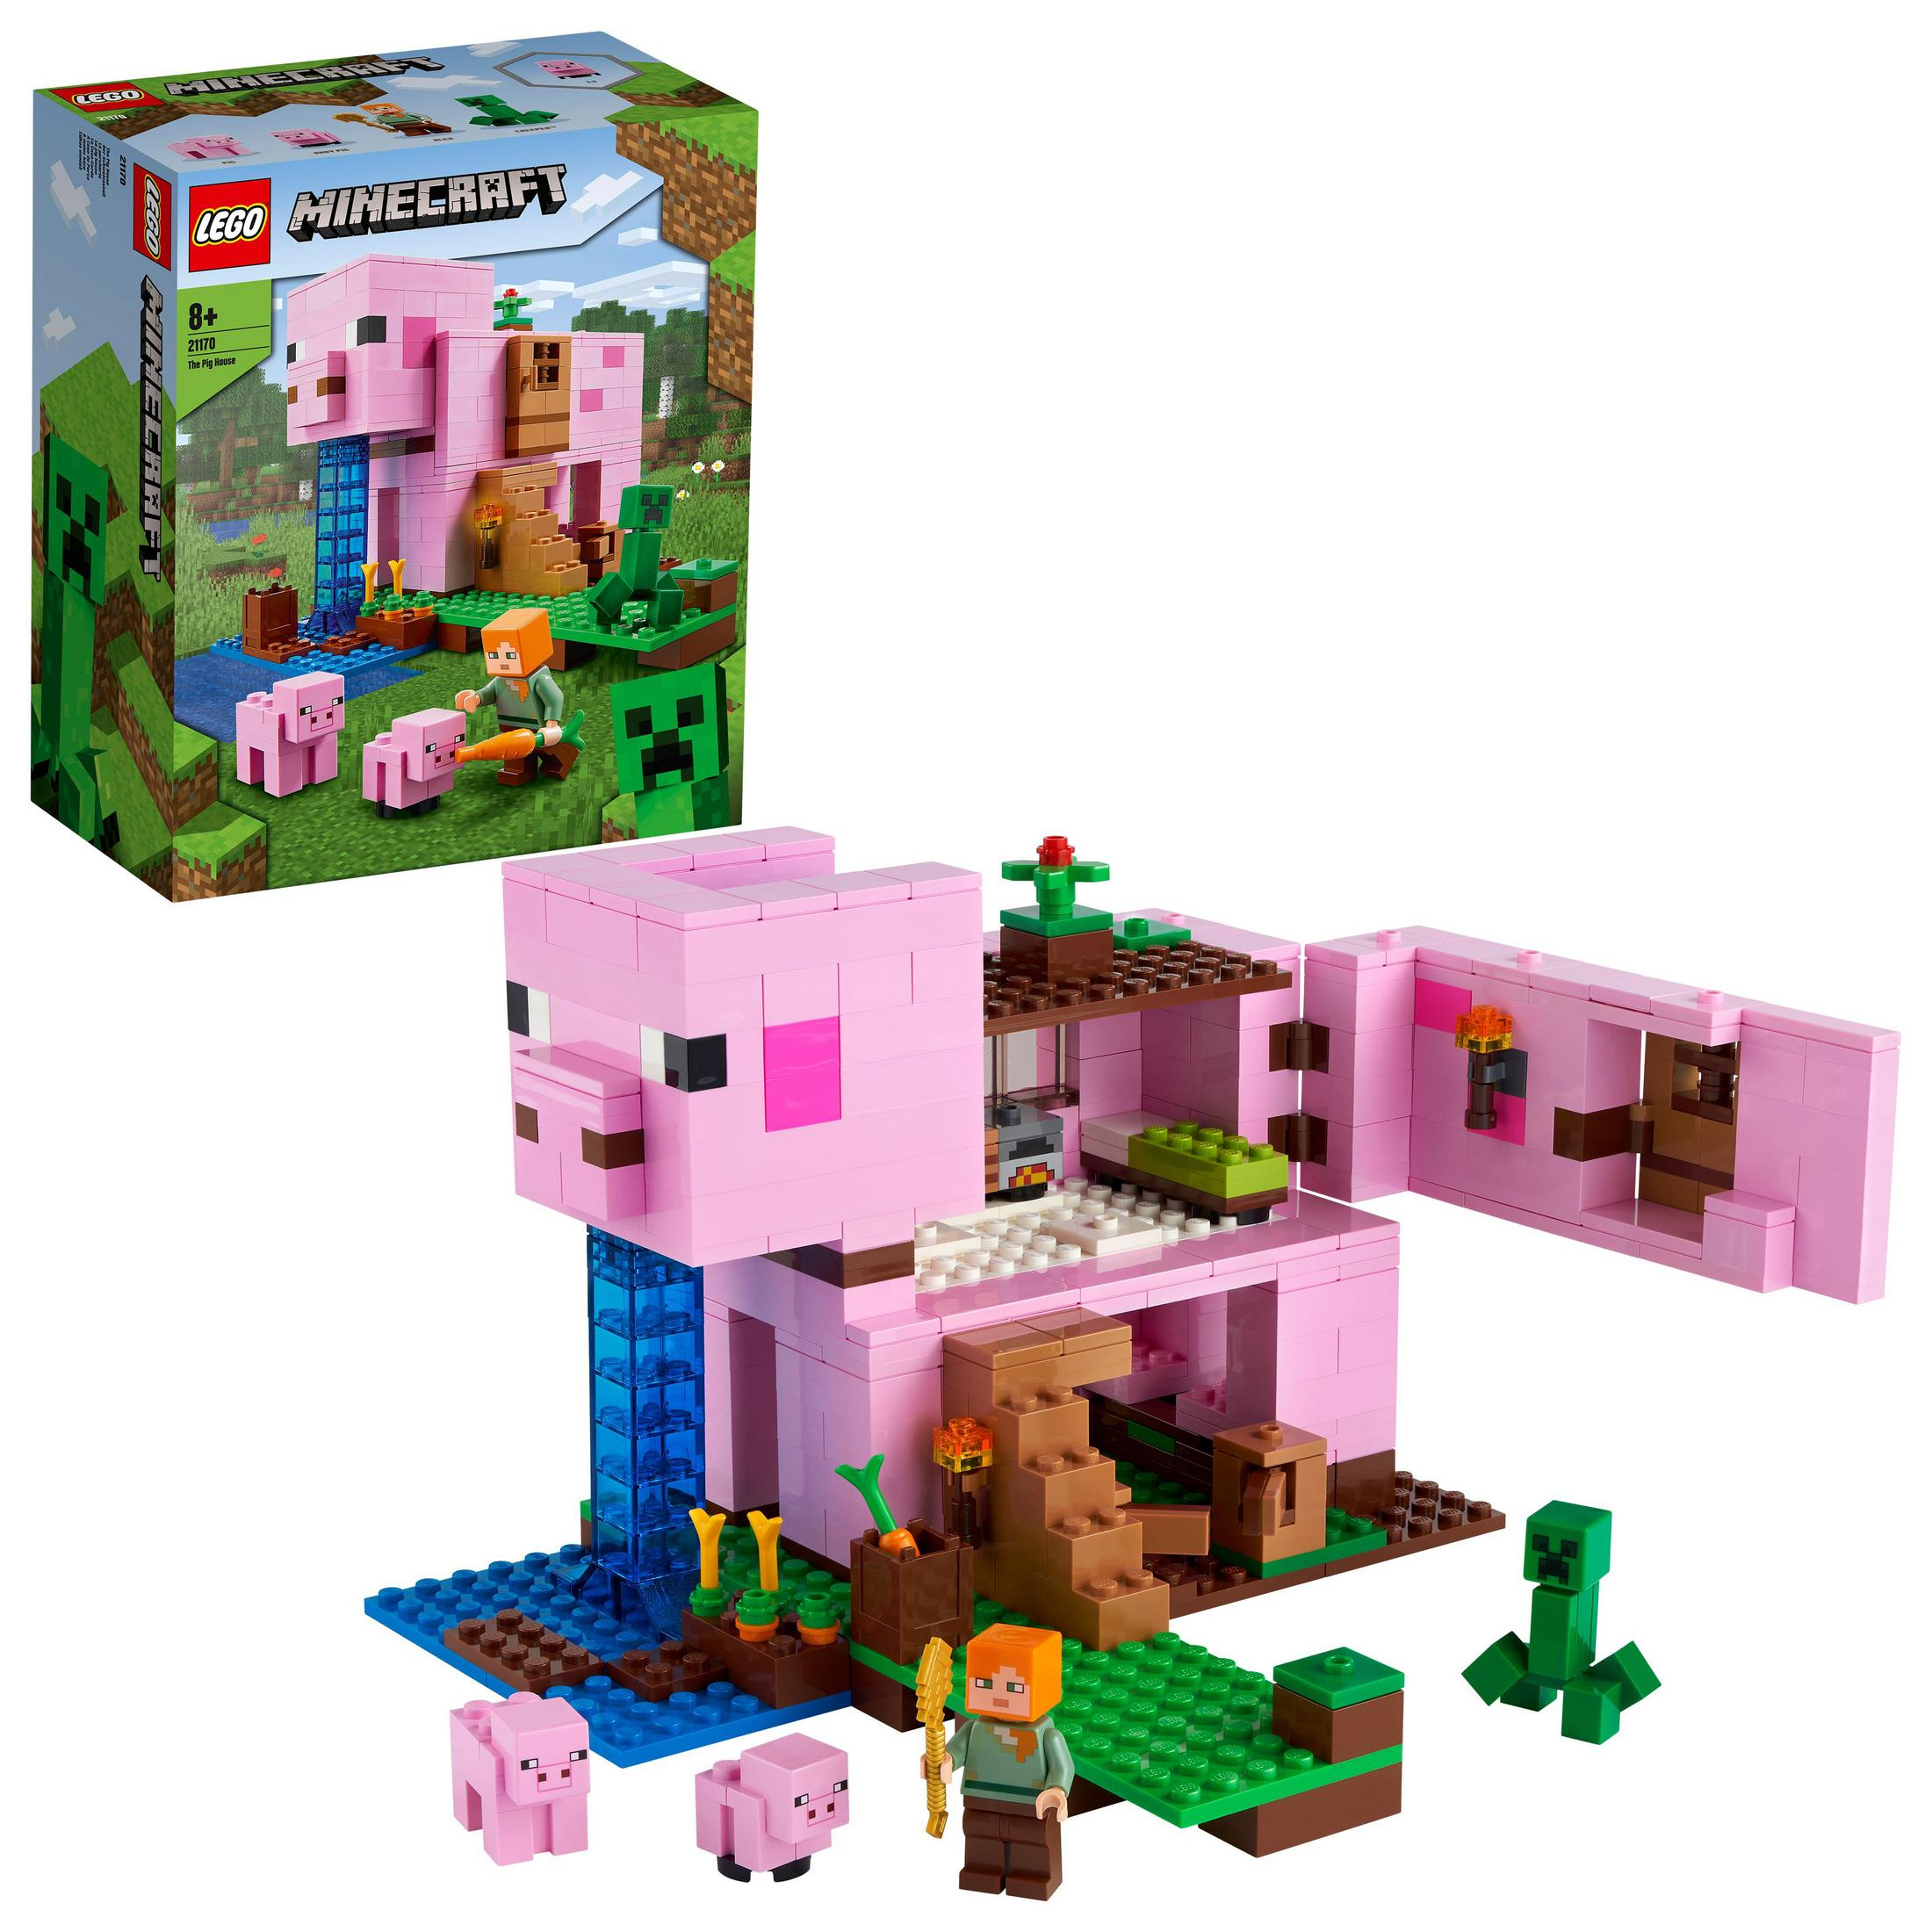 LEGO 21170 SCHWEINEHAUS LEGO Minecraft DAS